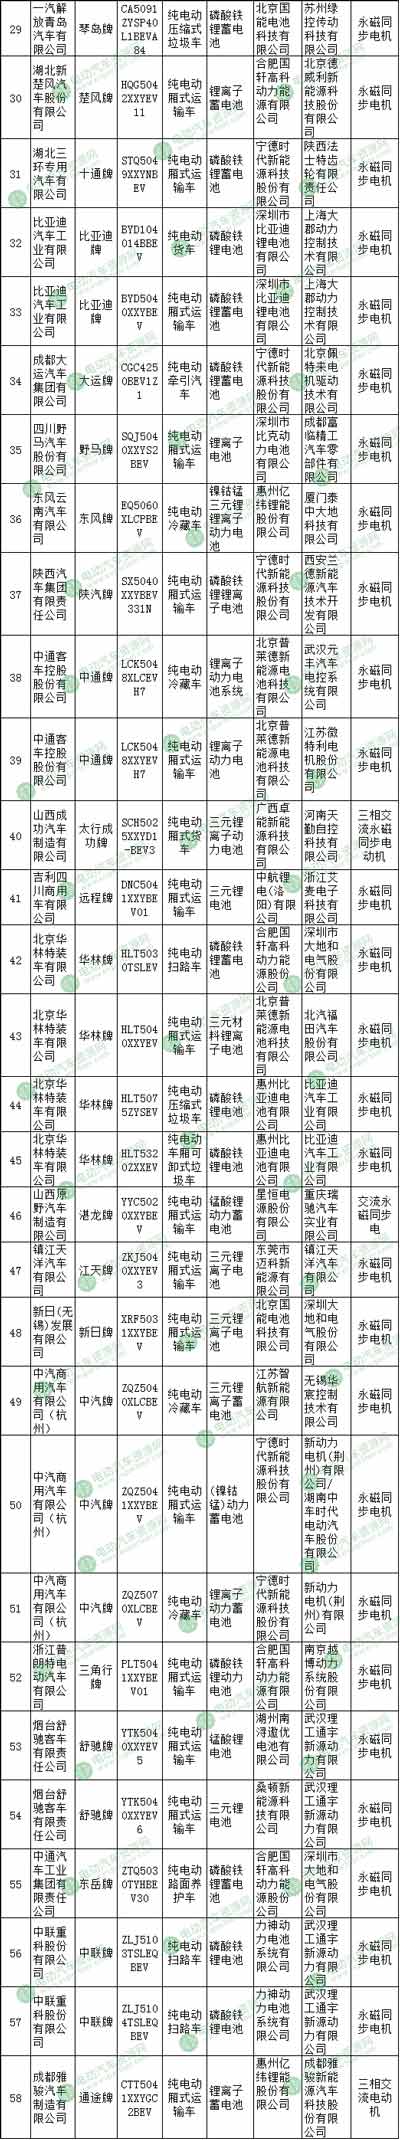 第11批推荐目录电动专用车配套解析  北汽福田/北京华林/东风股份等企业靠前